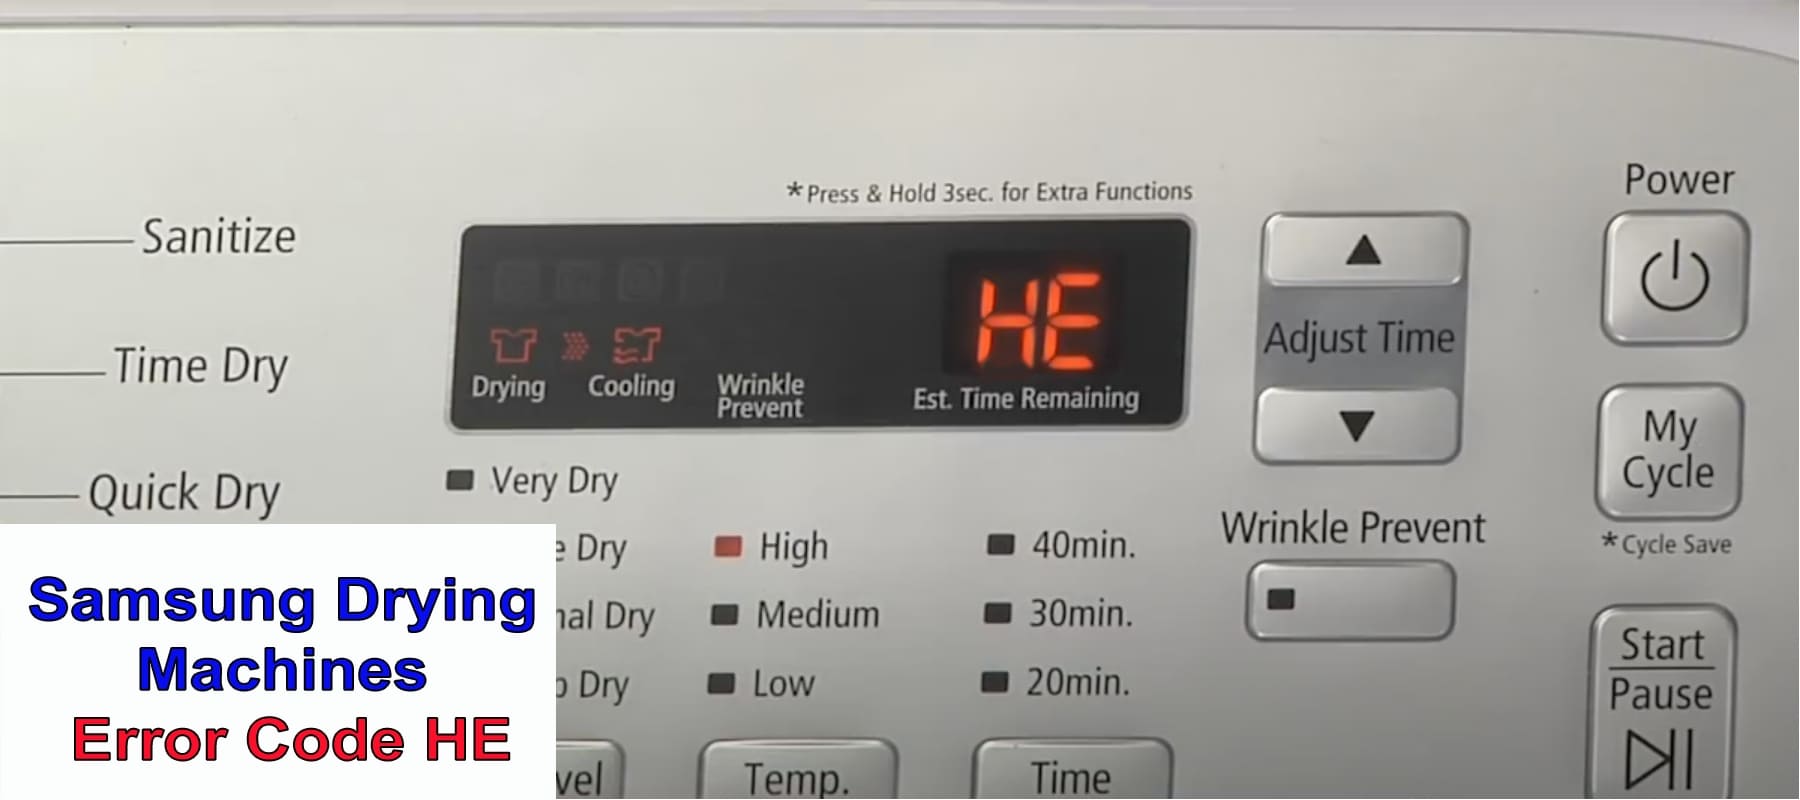 Samsung Drying Machines Error Code HE